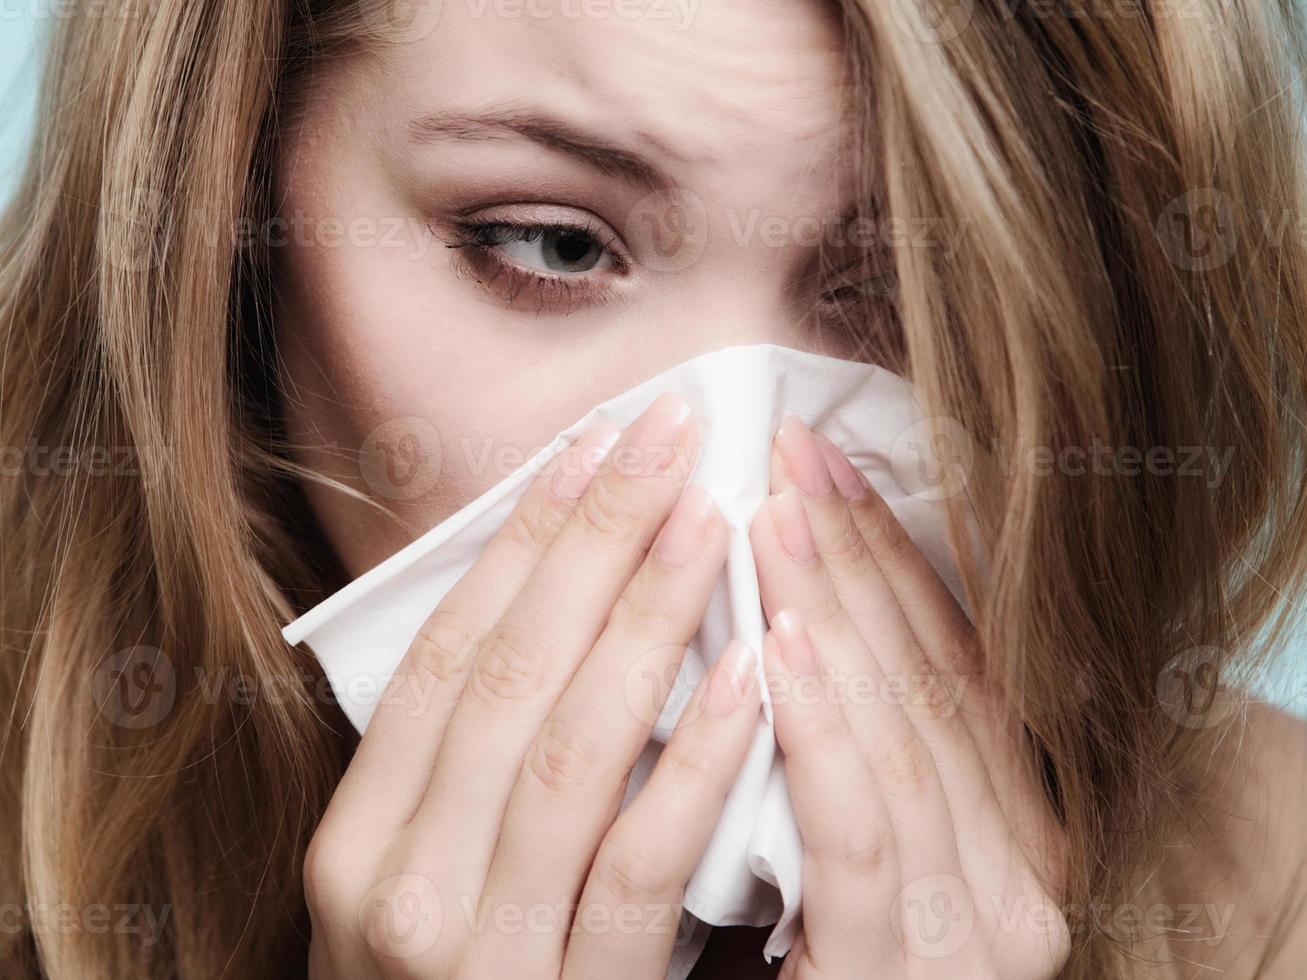 allergie grippale. fille malade éternue dans les tissus. santé photo